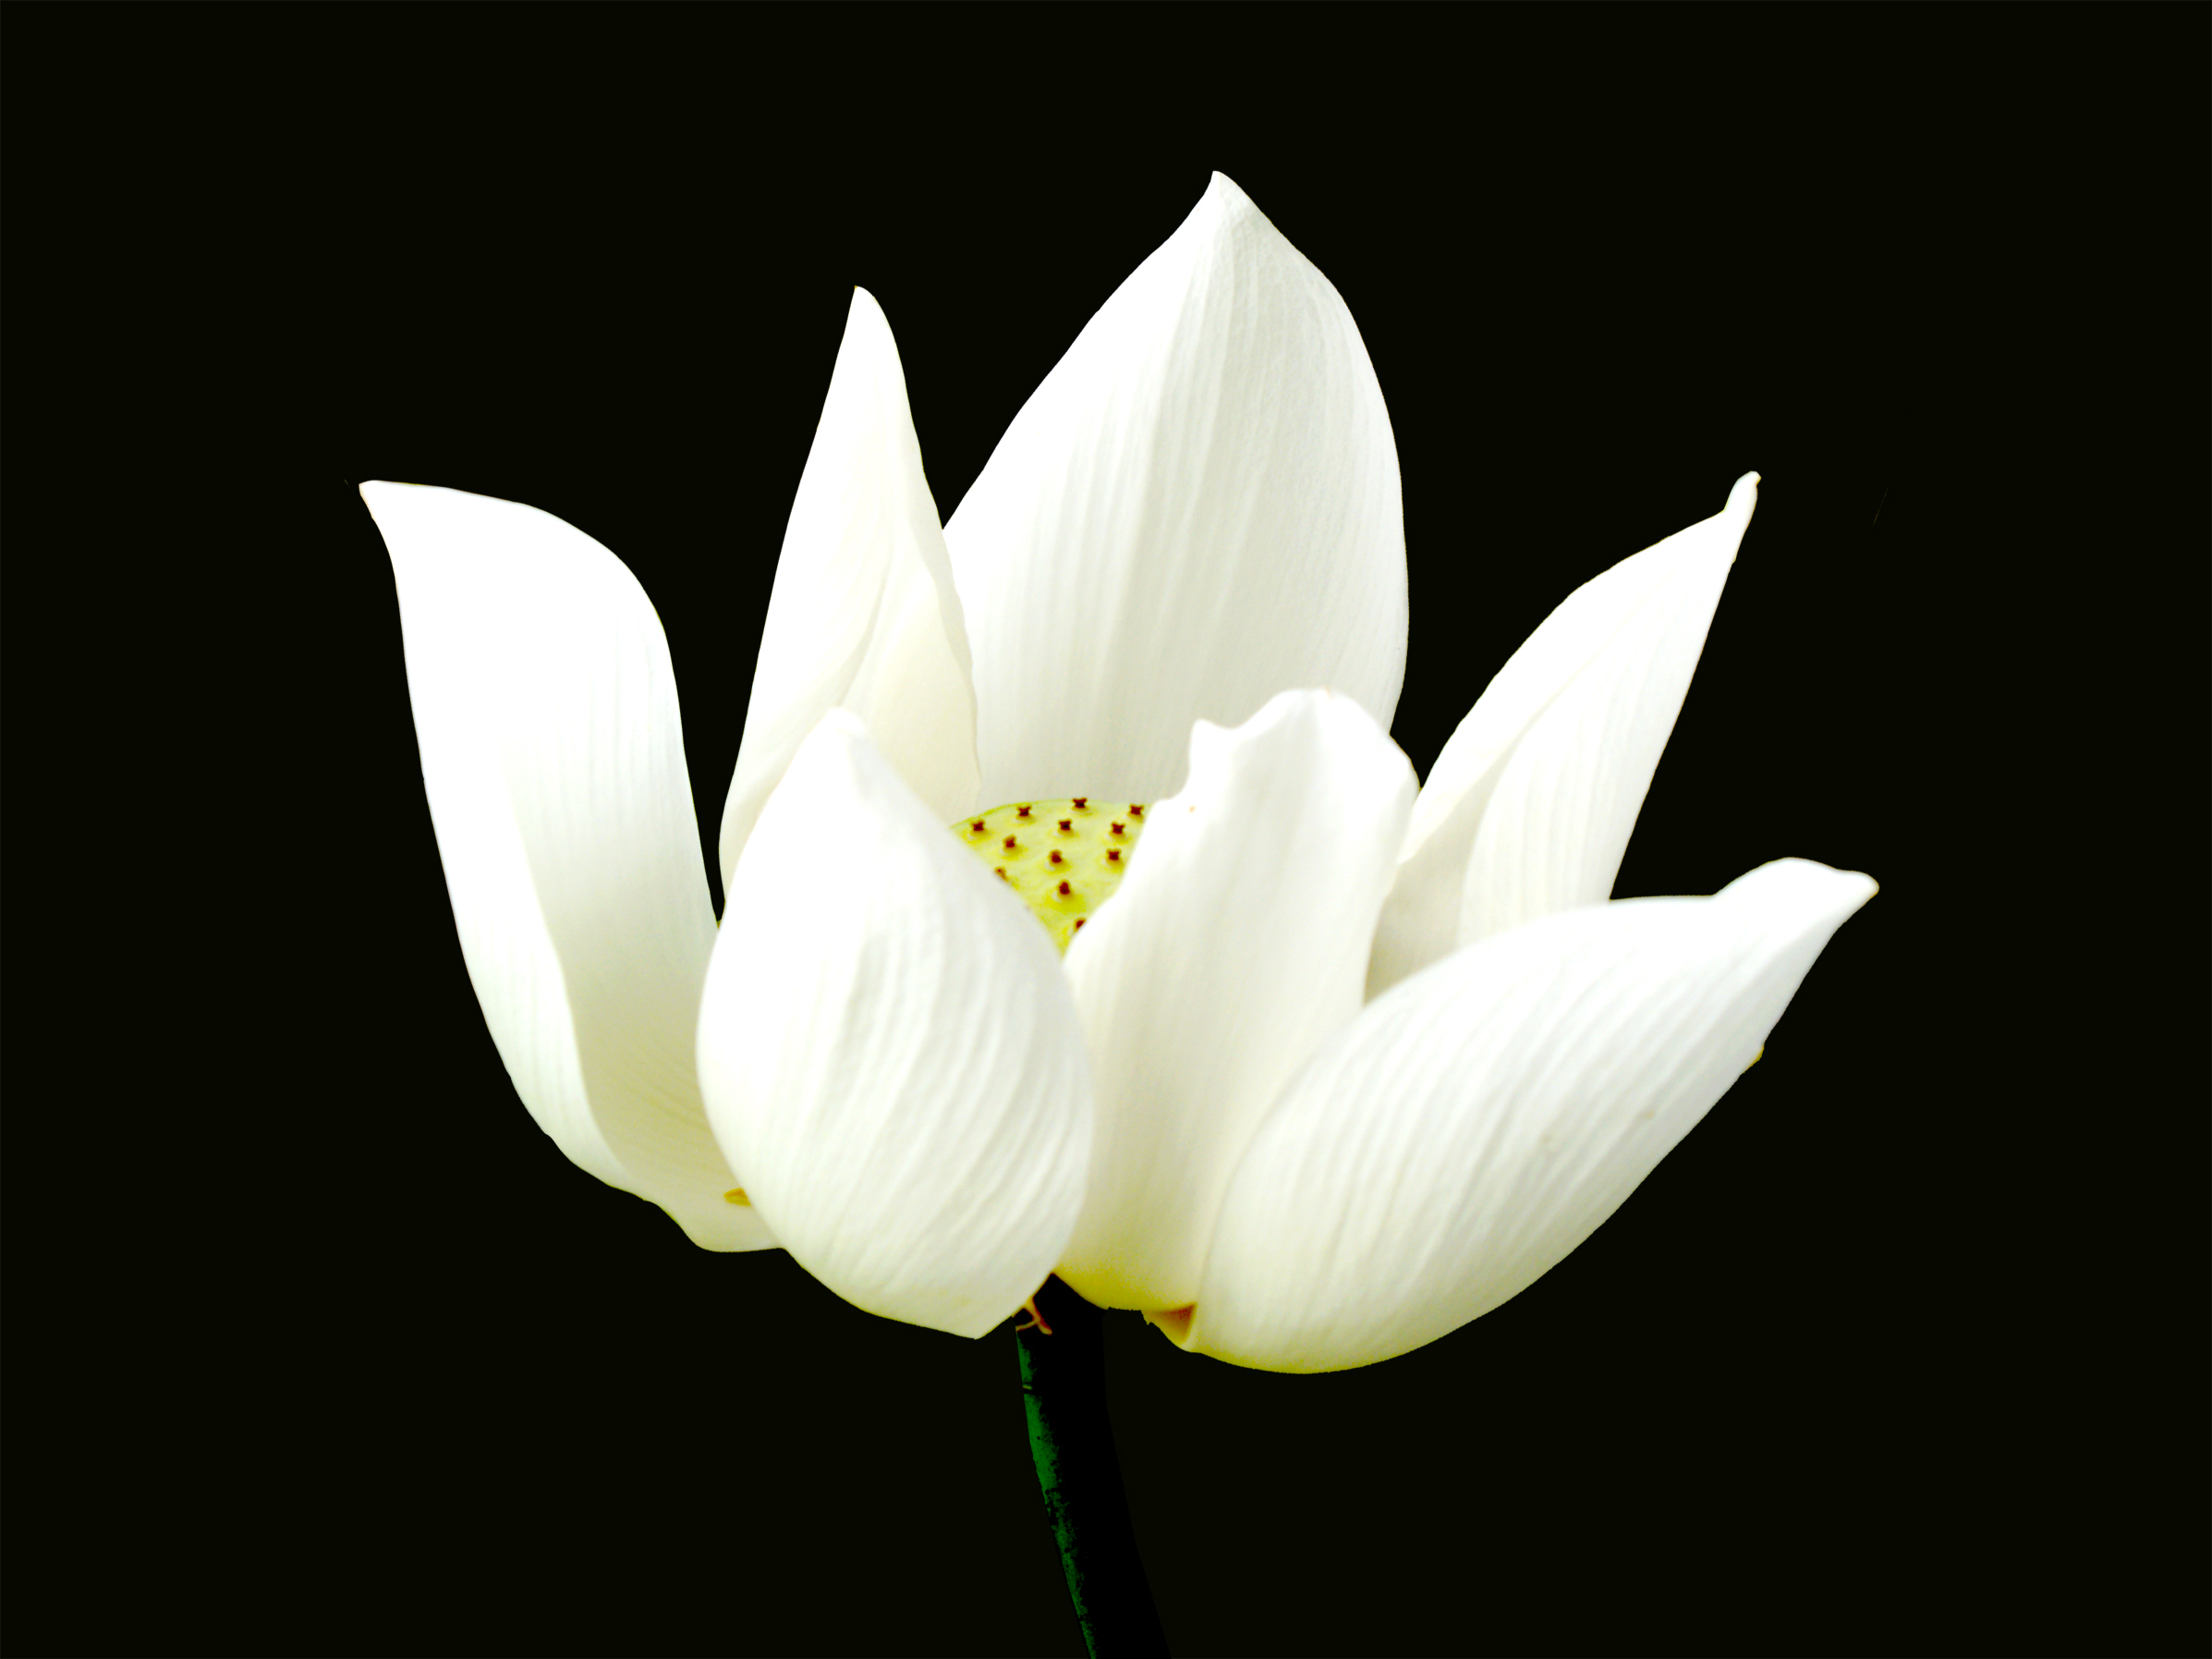 Hoa Sen white nền đen thui tuyệt đẹp